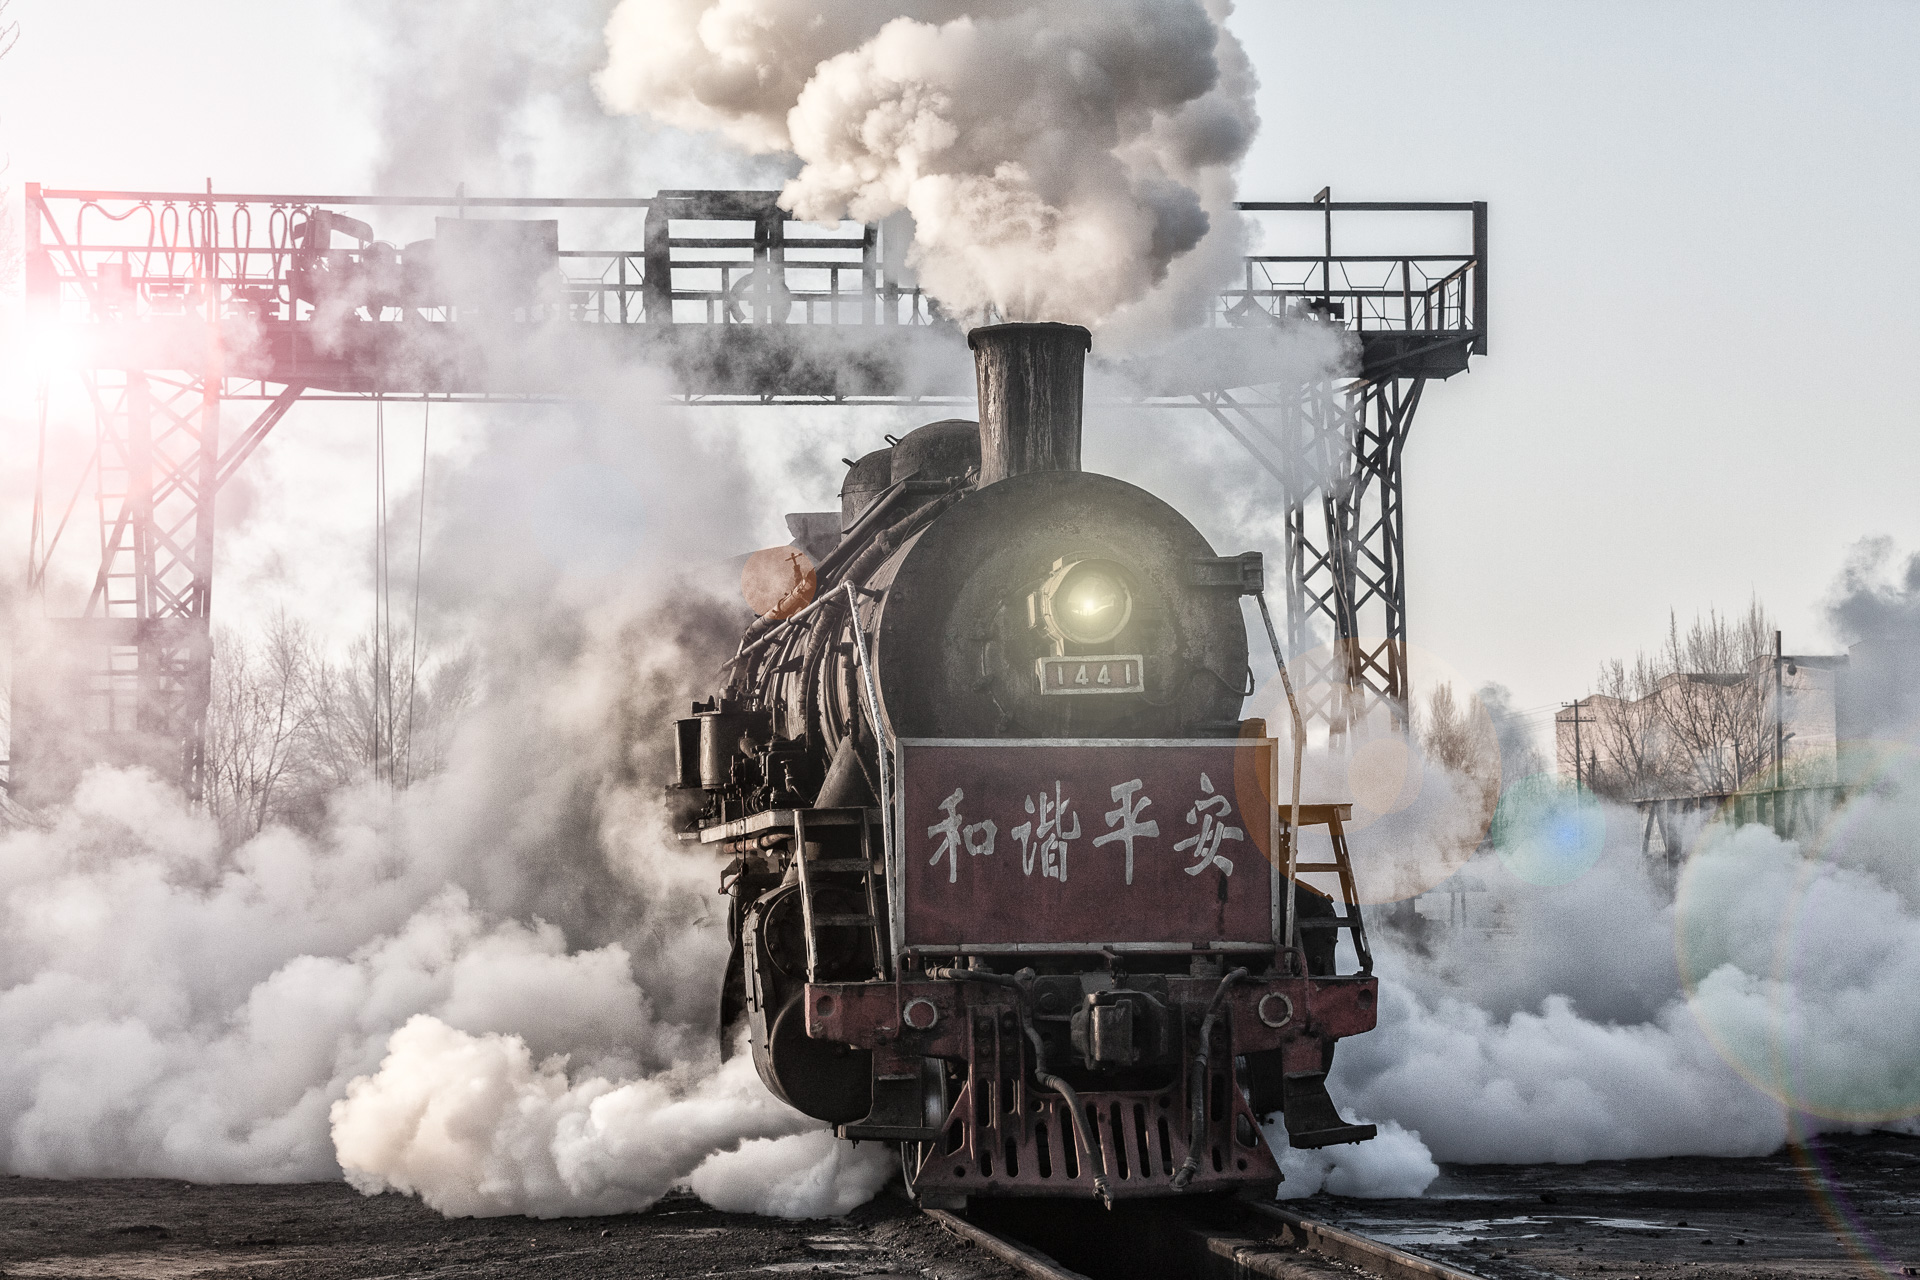   SY 1441  unter dem Kohlenkran der Einsatzstelle Zhuangmei hüllt sich fotogen in tosende Dampfschwaden. Sie wird den nächsten Zug übernehmen. 